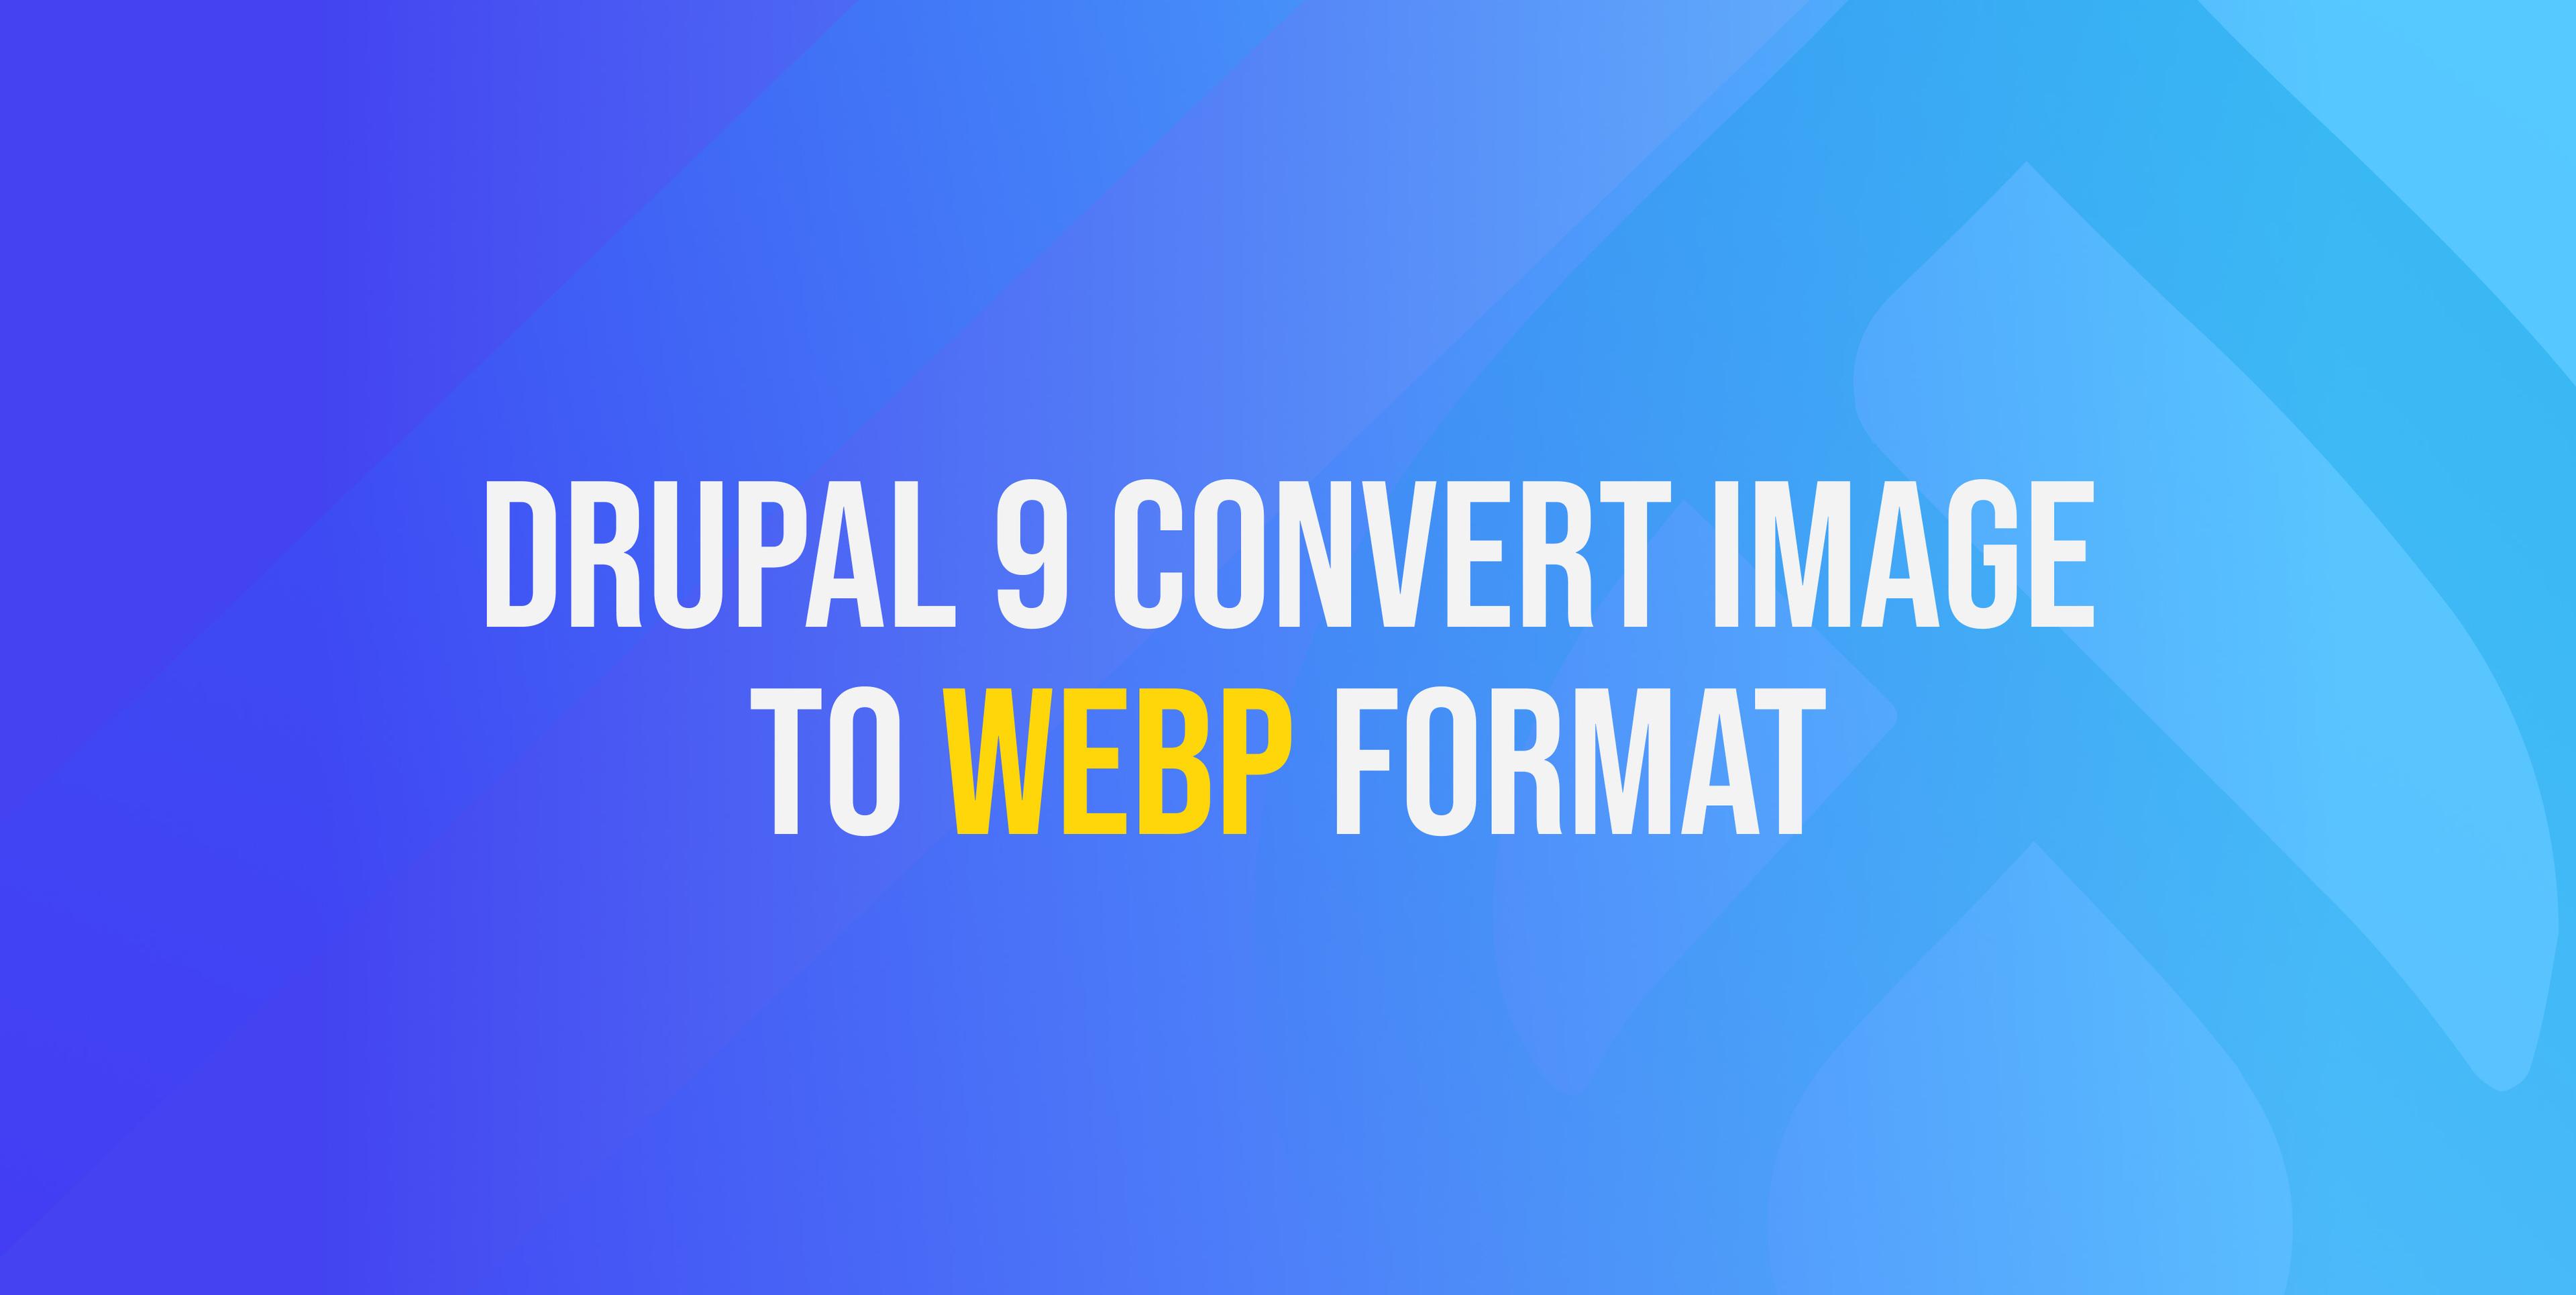 Drupal 9 convert image to WebP format